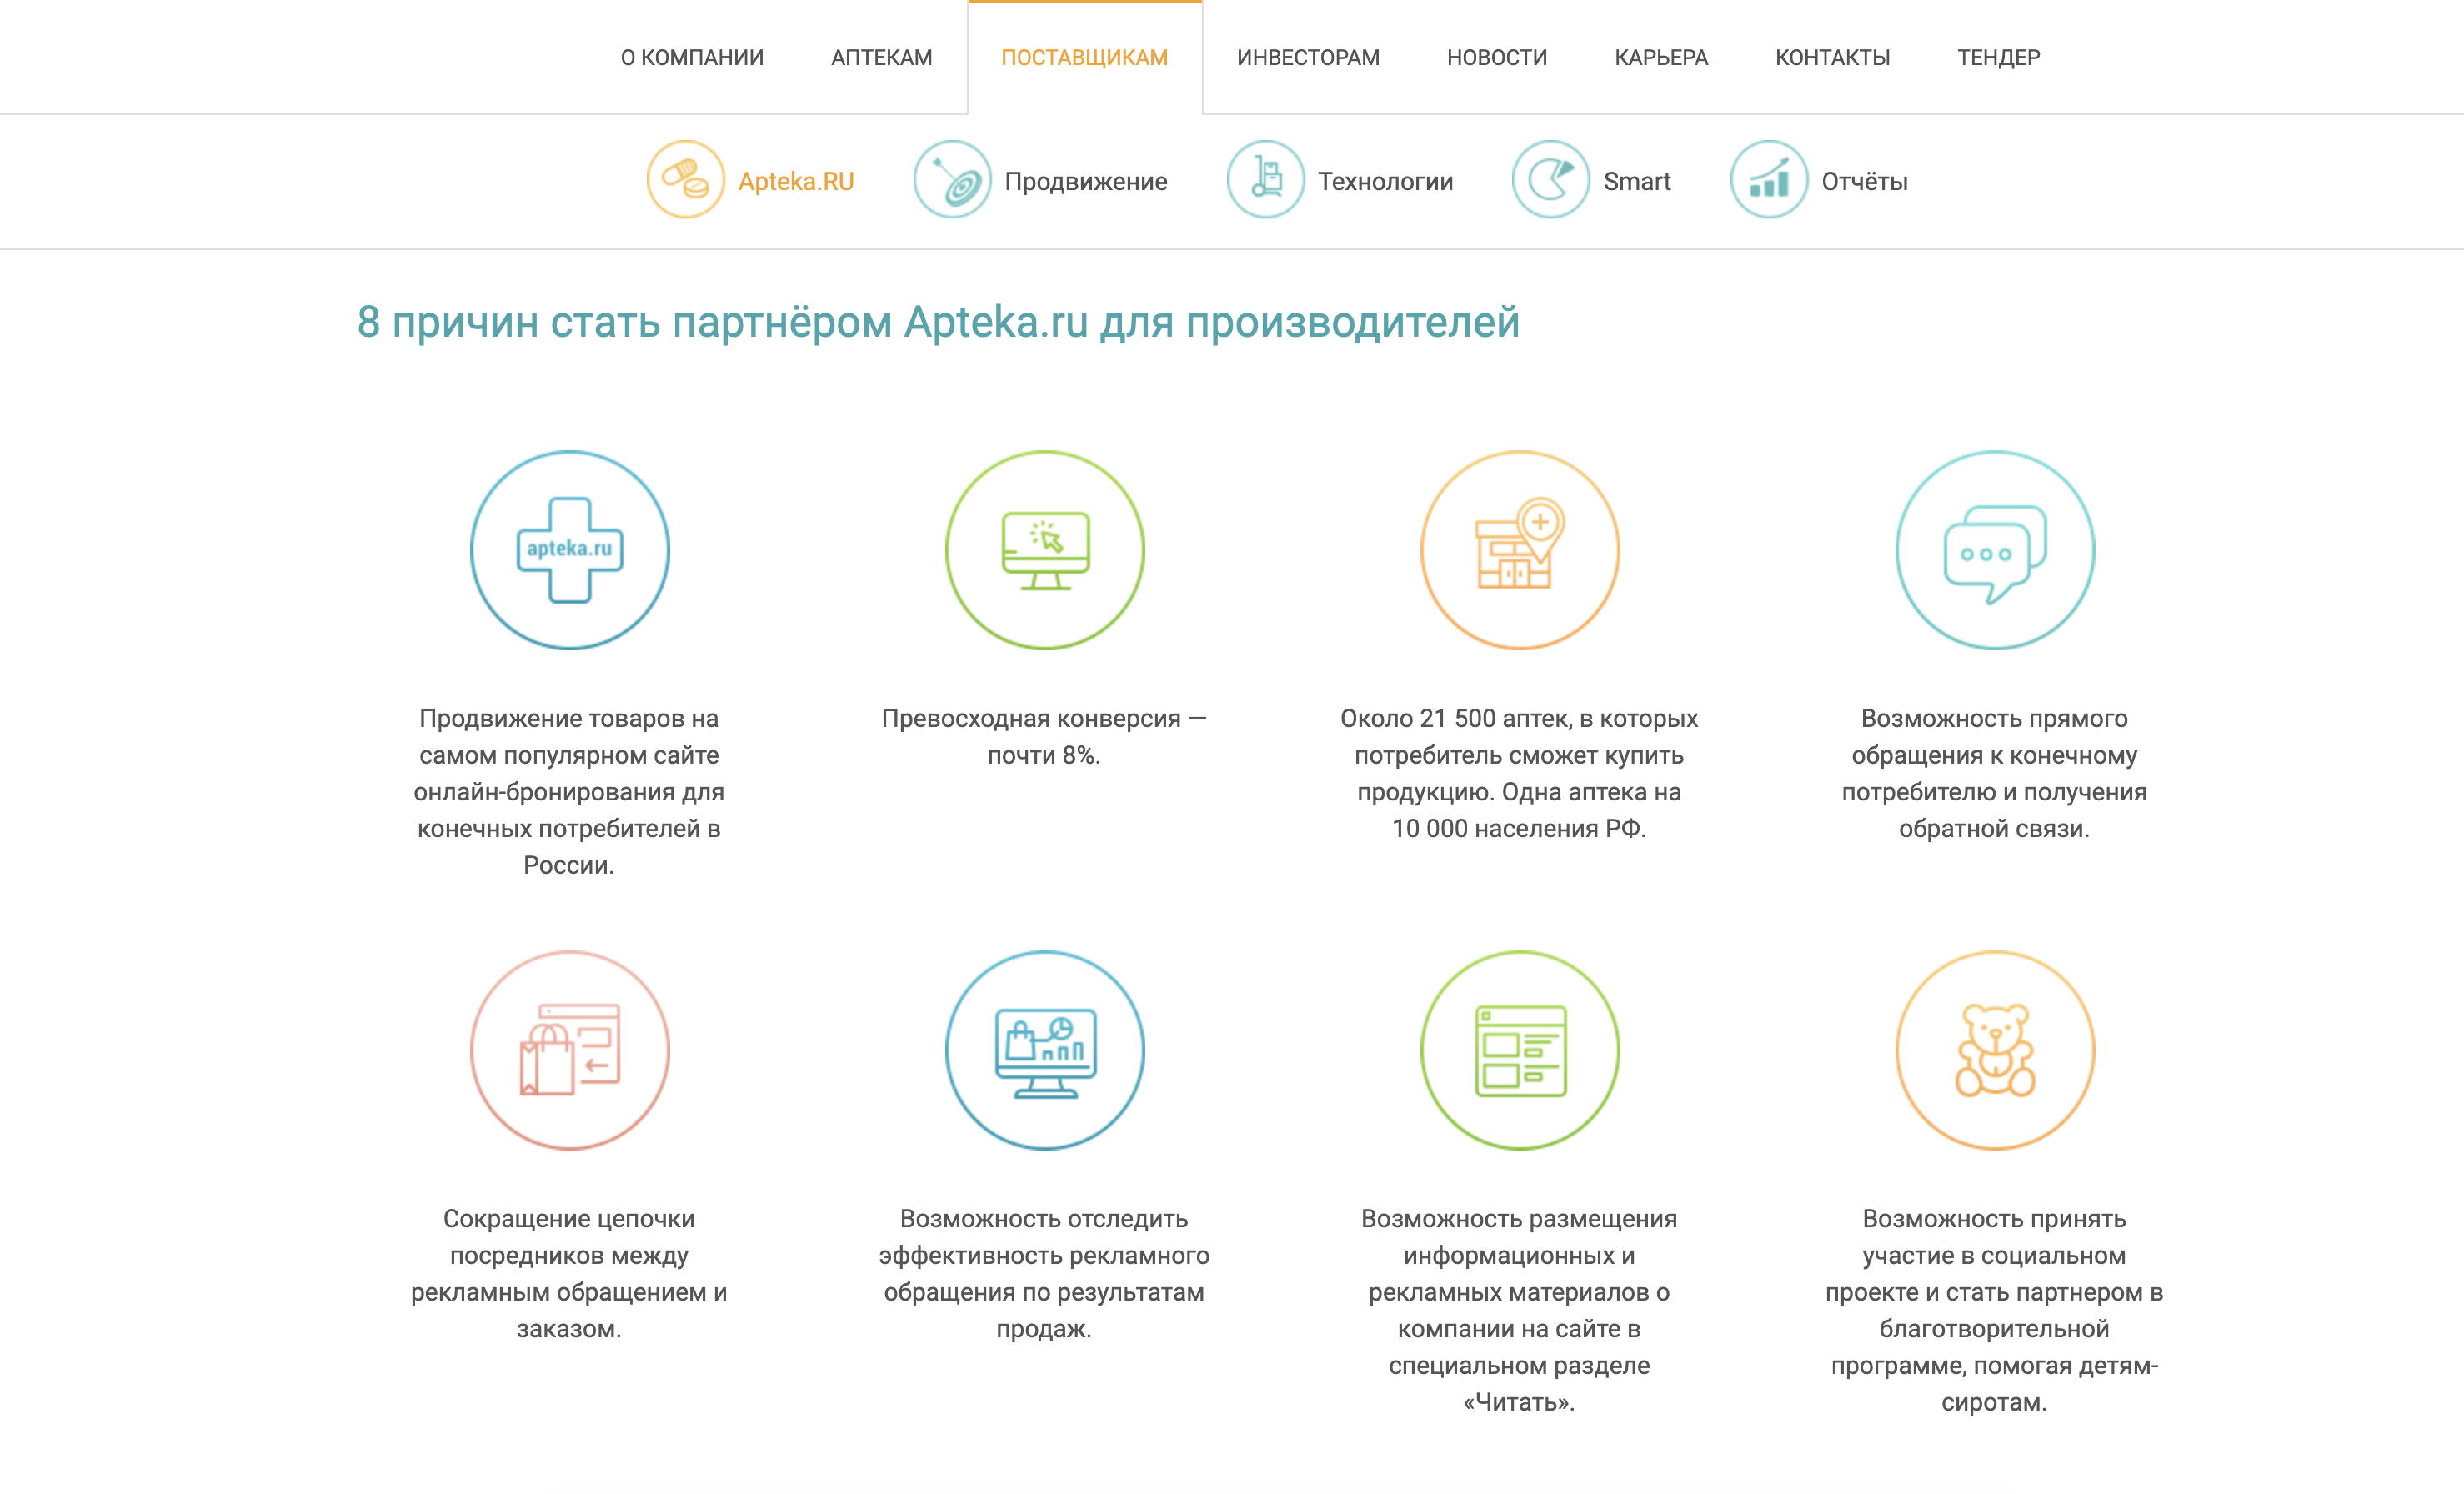  Apteka.ru: условия преимущества сотрудничества с интернет-магазином